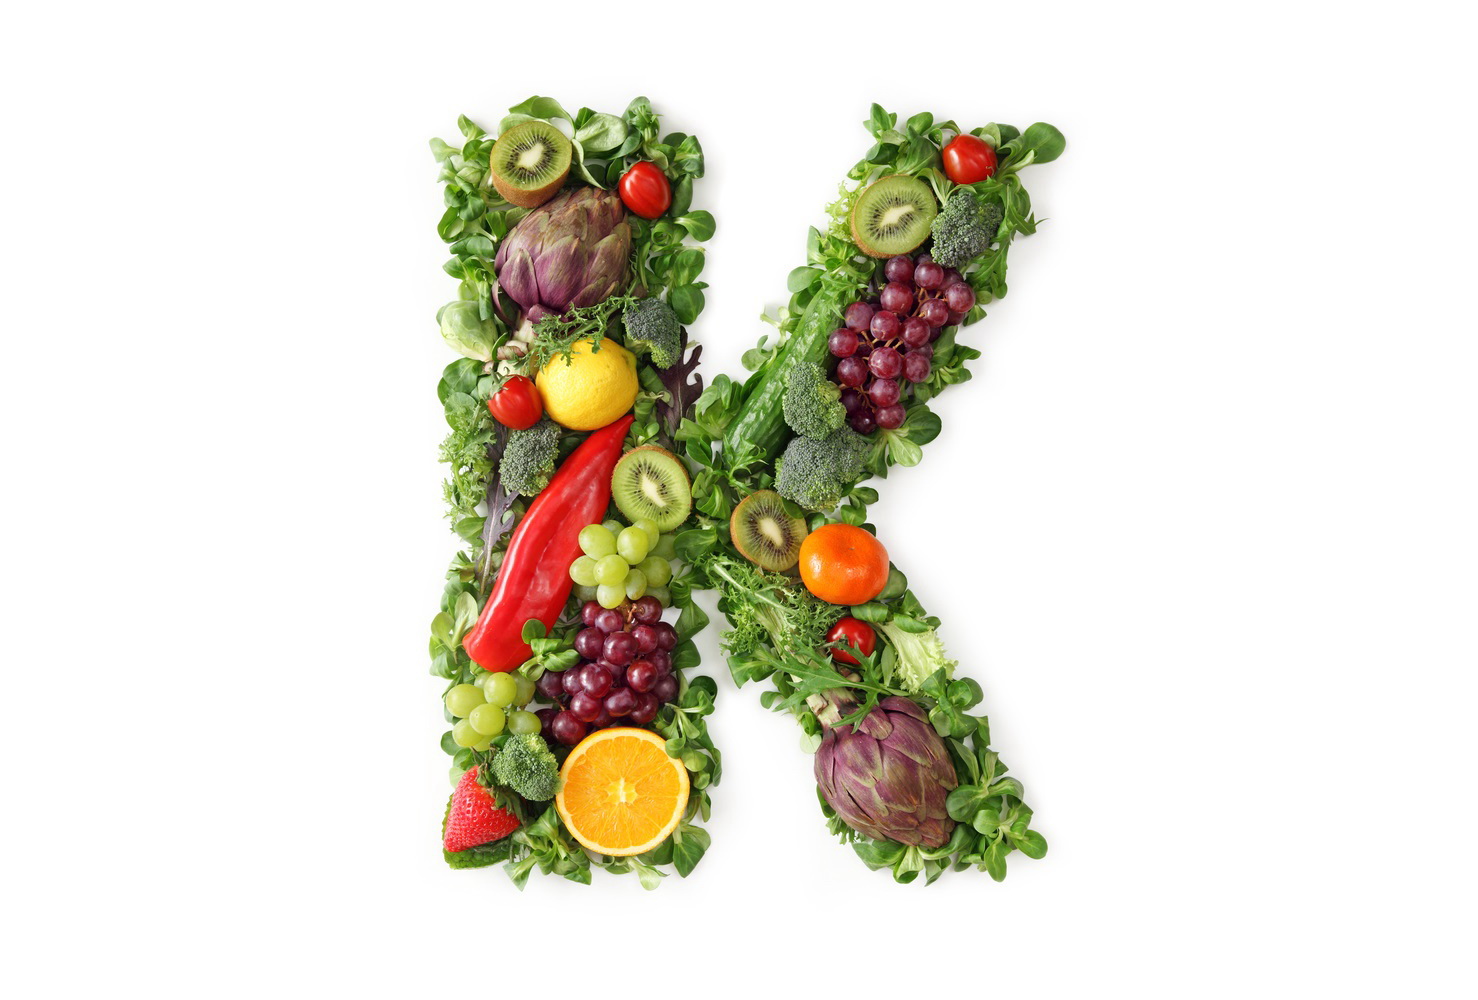 Vitamin o. Что такое витамины. Витамин k. Буквы из продуктов. Буквы из овощей.